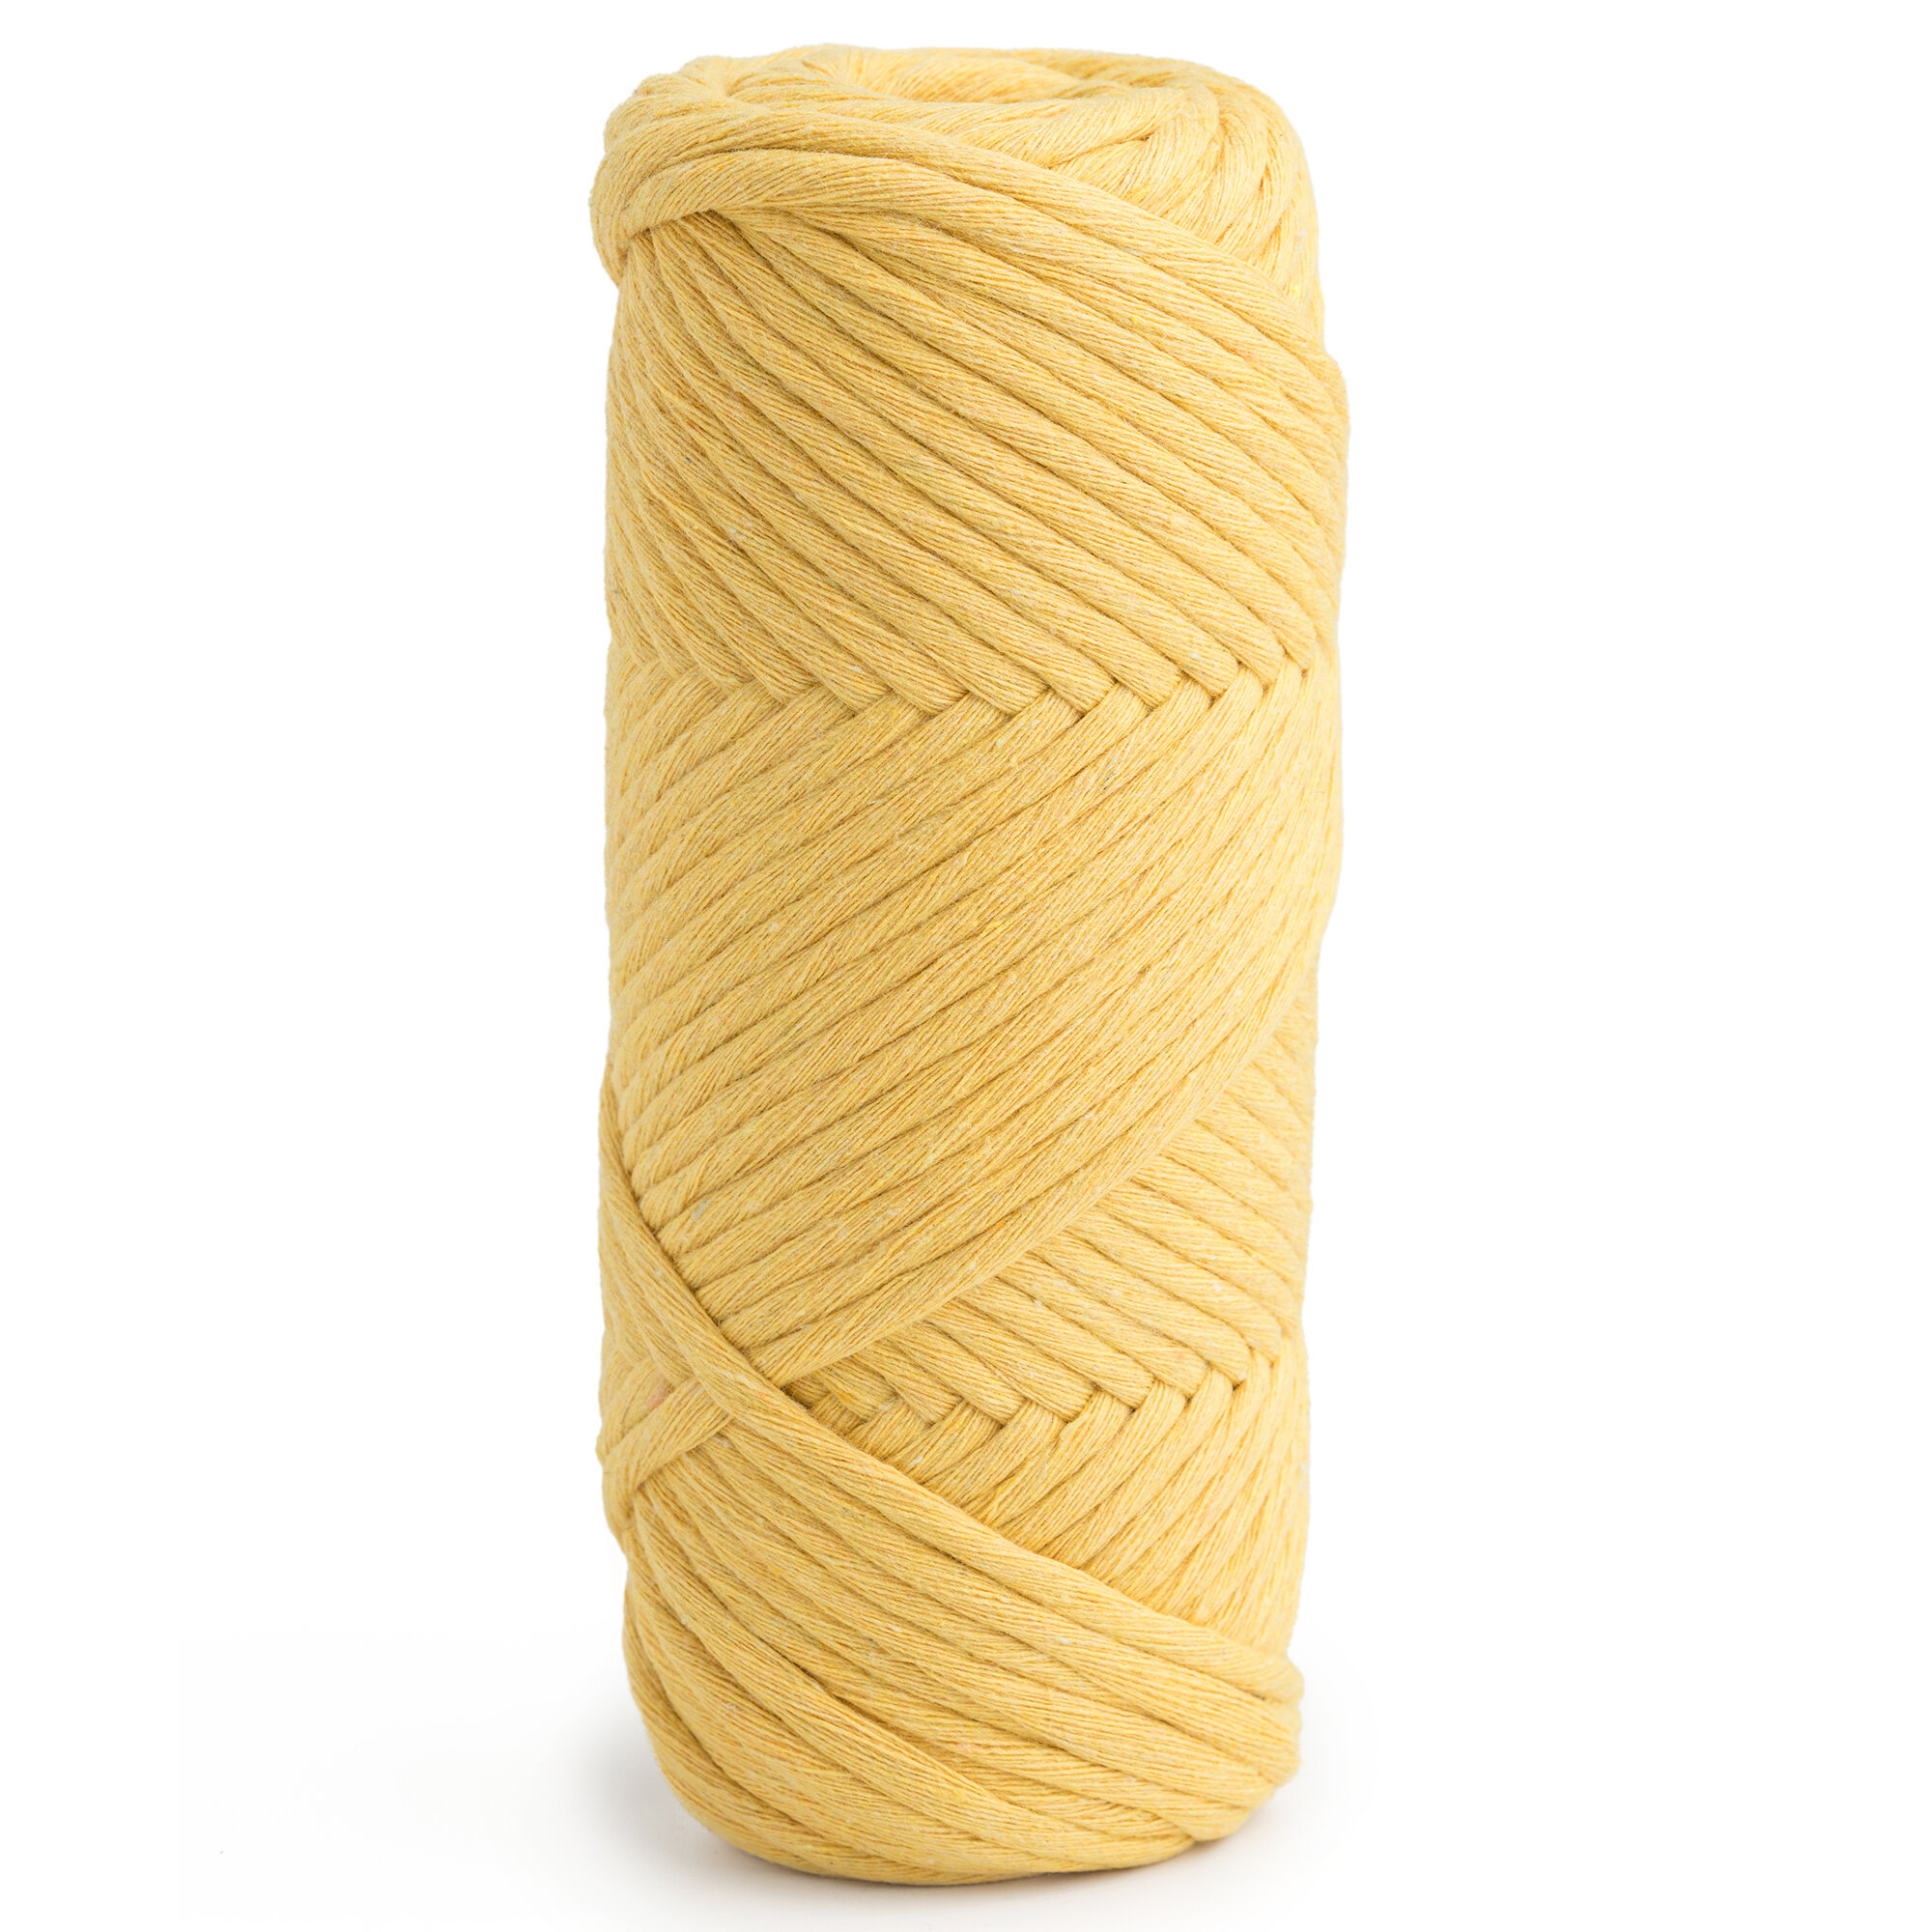 Шпагат хлопковый желтый 4 мм 100 м для макраме вязания рукоделия